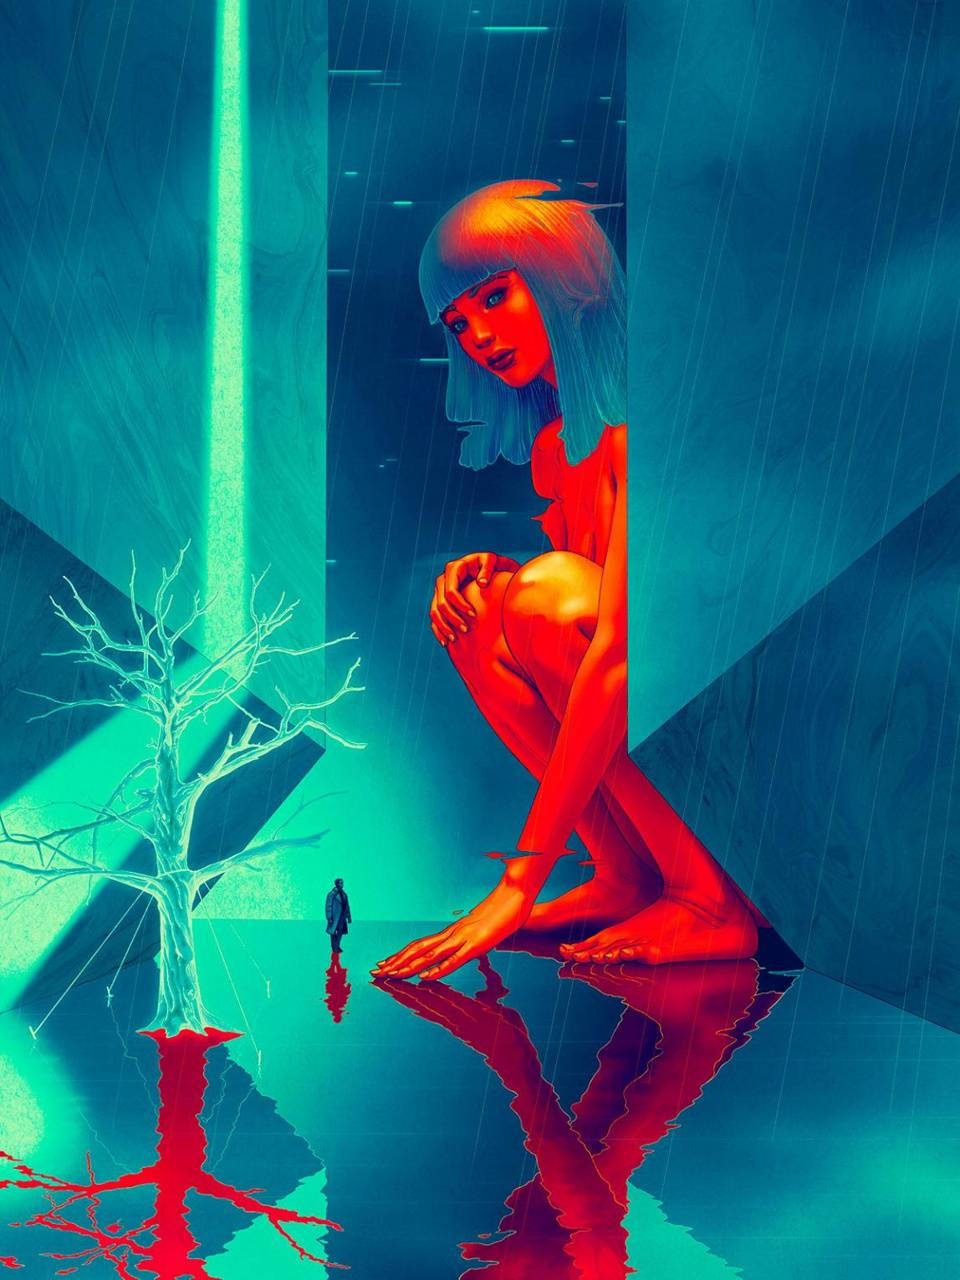 Blade Runner 2049 Vaporwave Wallpaper